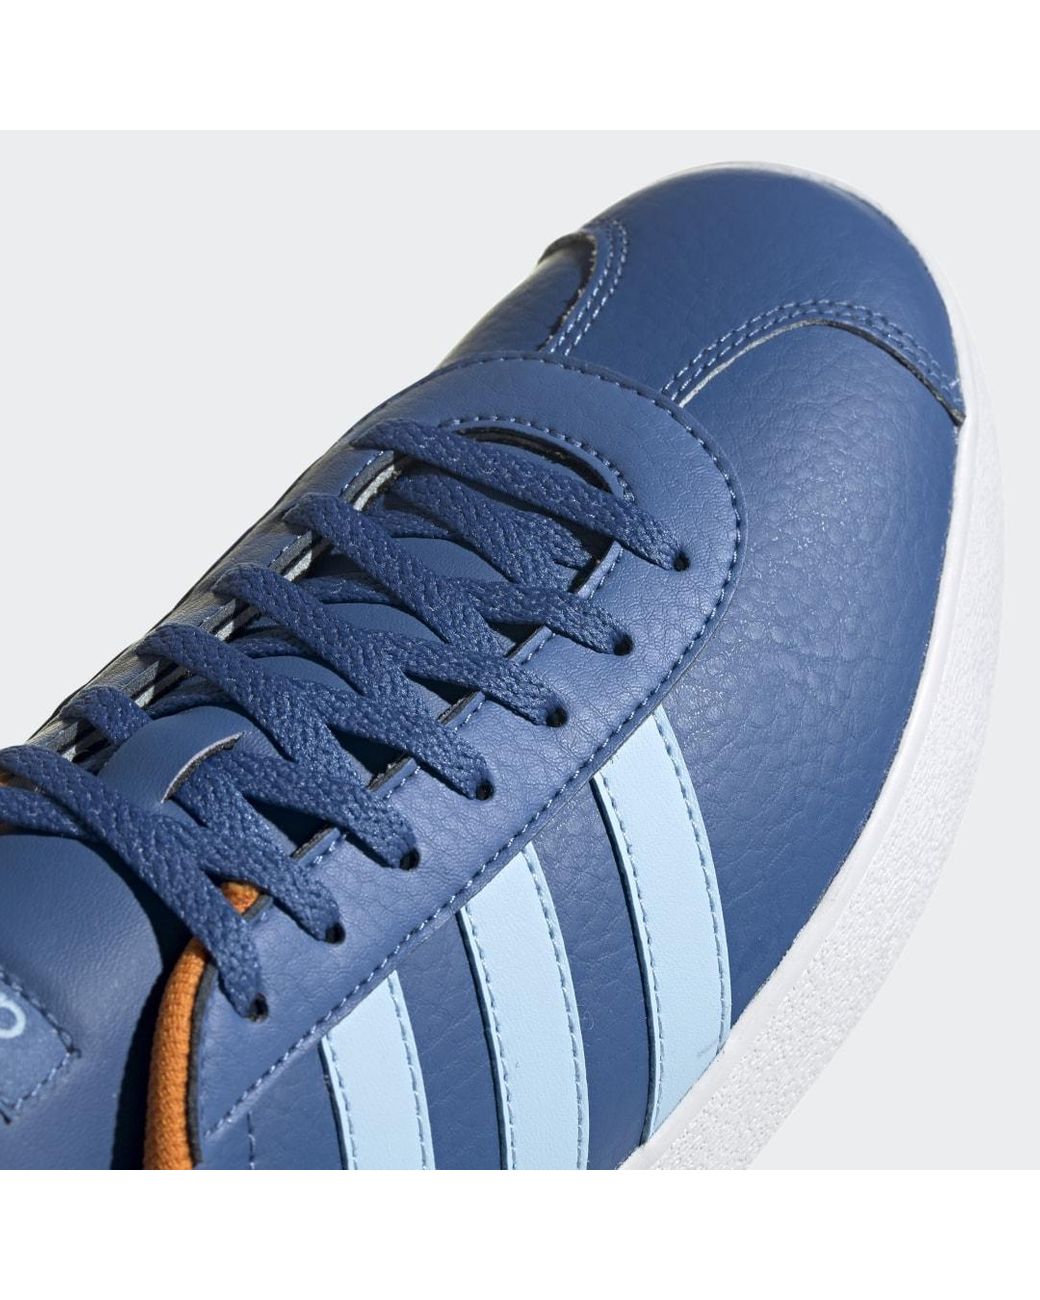 podmuch Pigment Konwersacyjny www adidas de uisneaker union investment  Biuro podróży Mistrzostwo taktyka